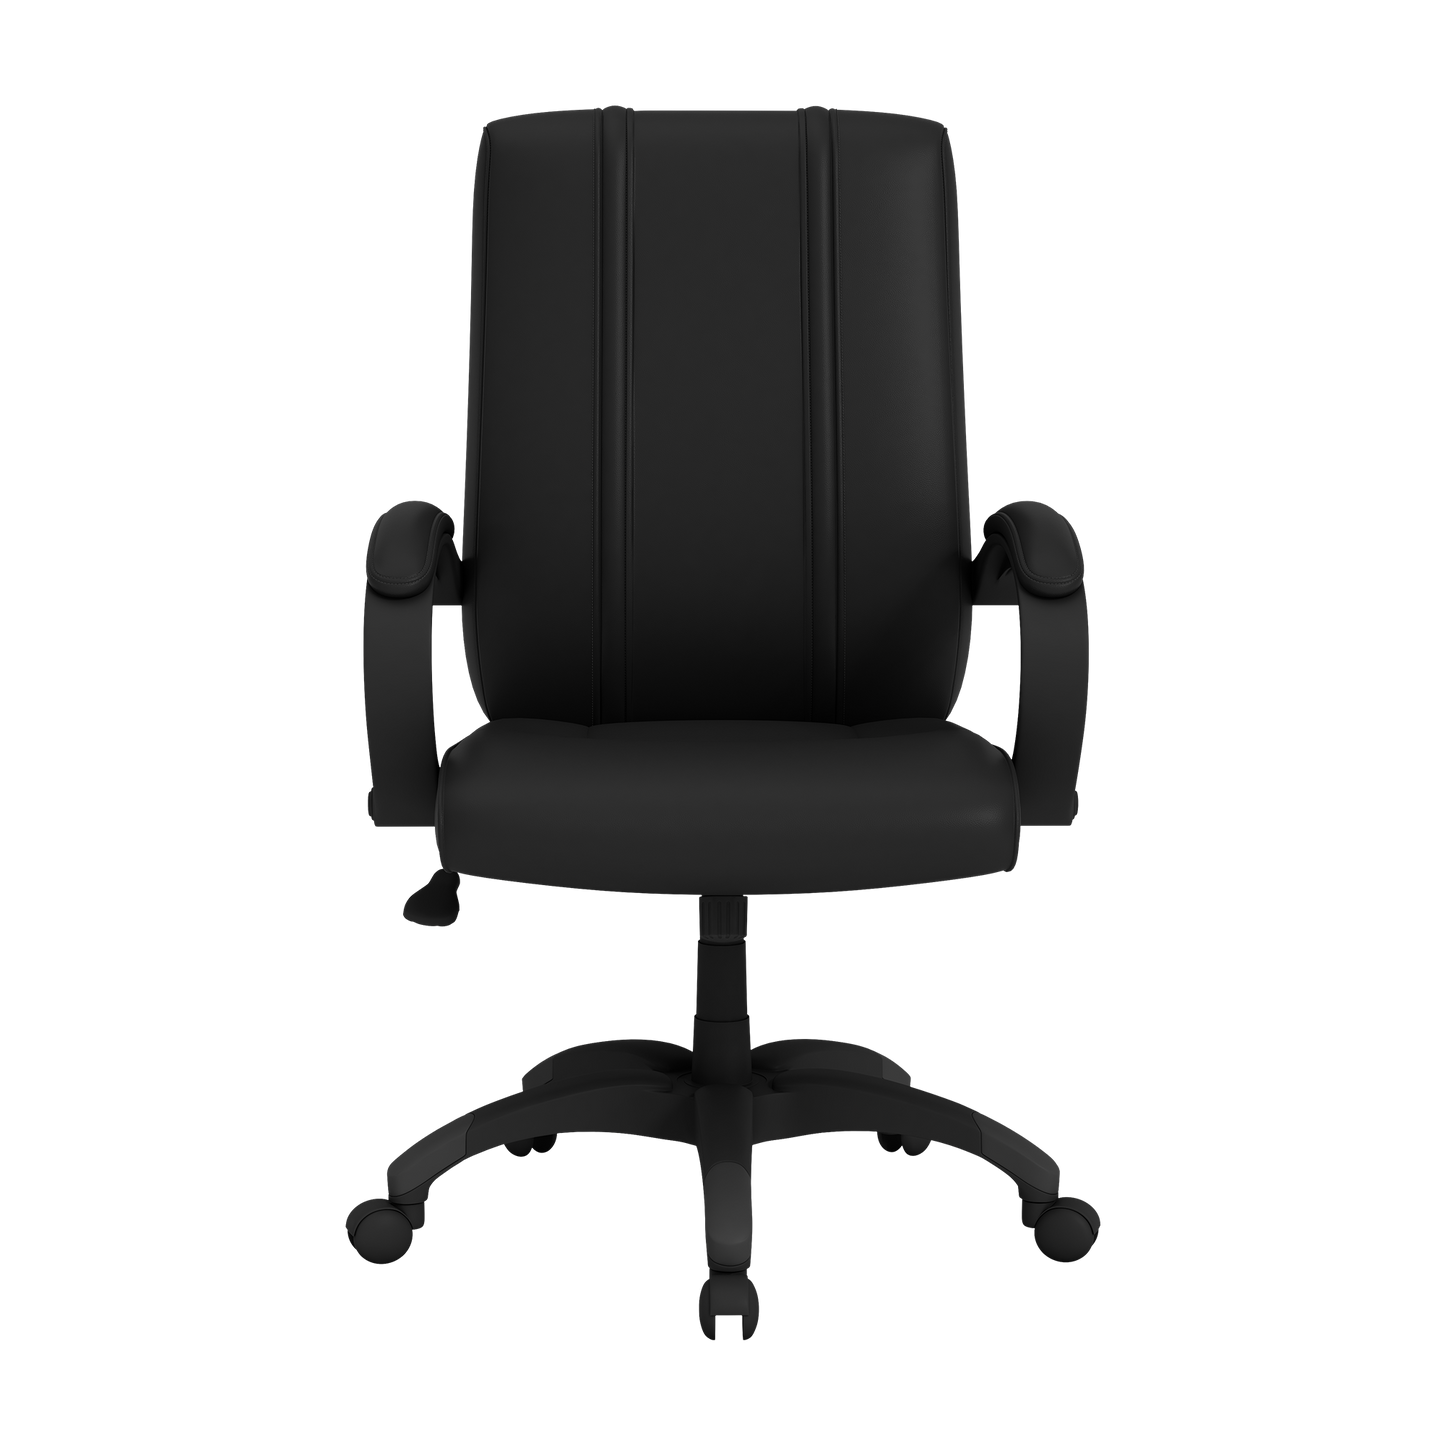 Office Chair 1000 with Major League Soccer Logo